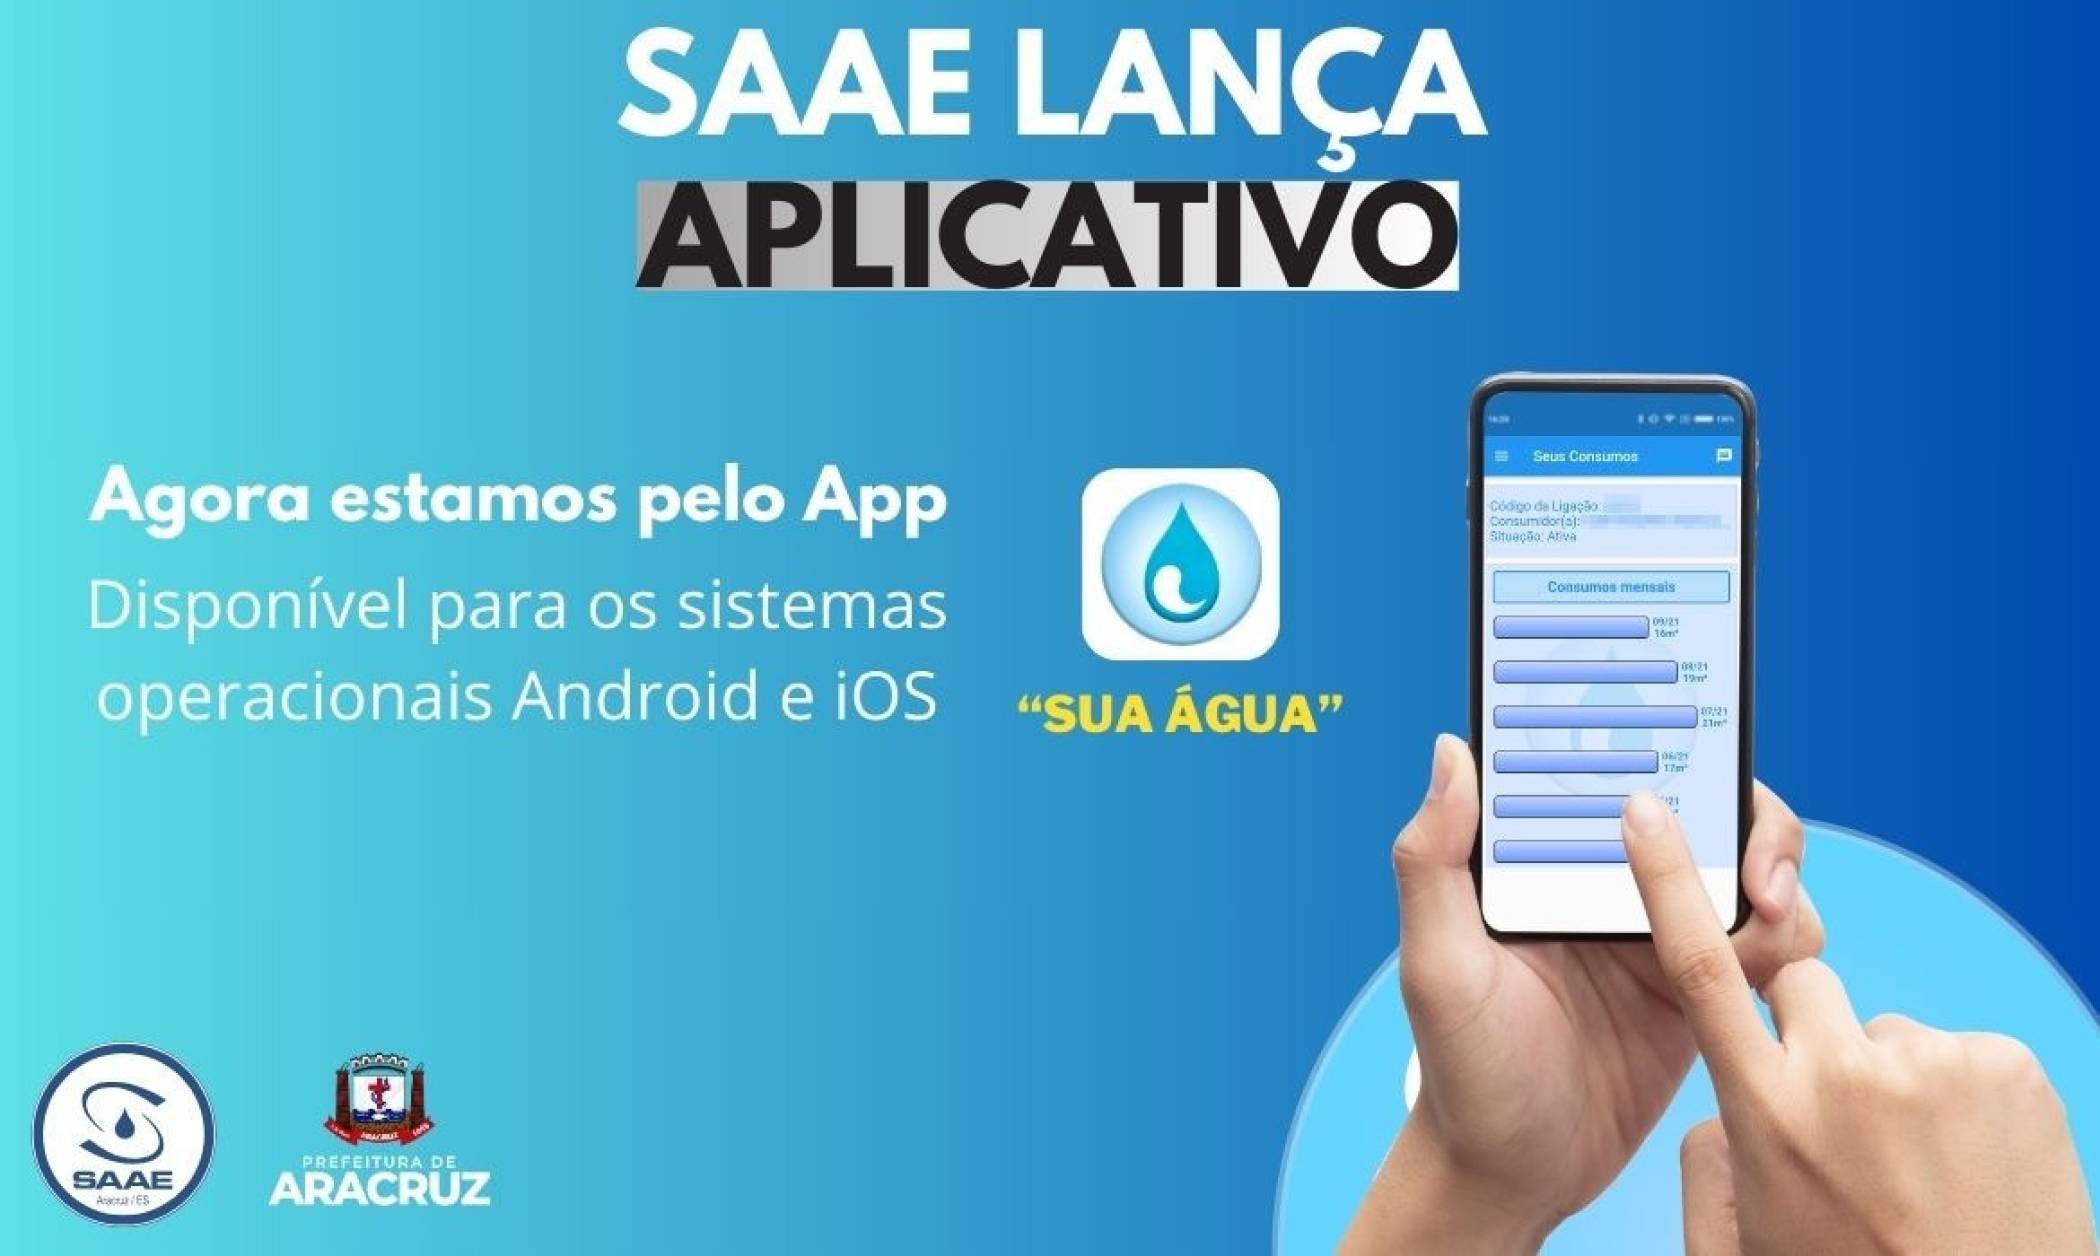 SAAE lança aplicativo para facilitar acesso aos serviços